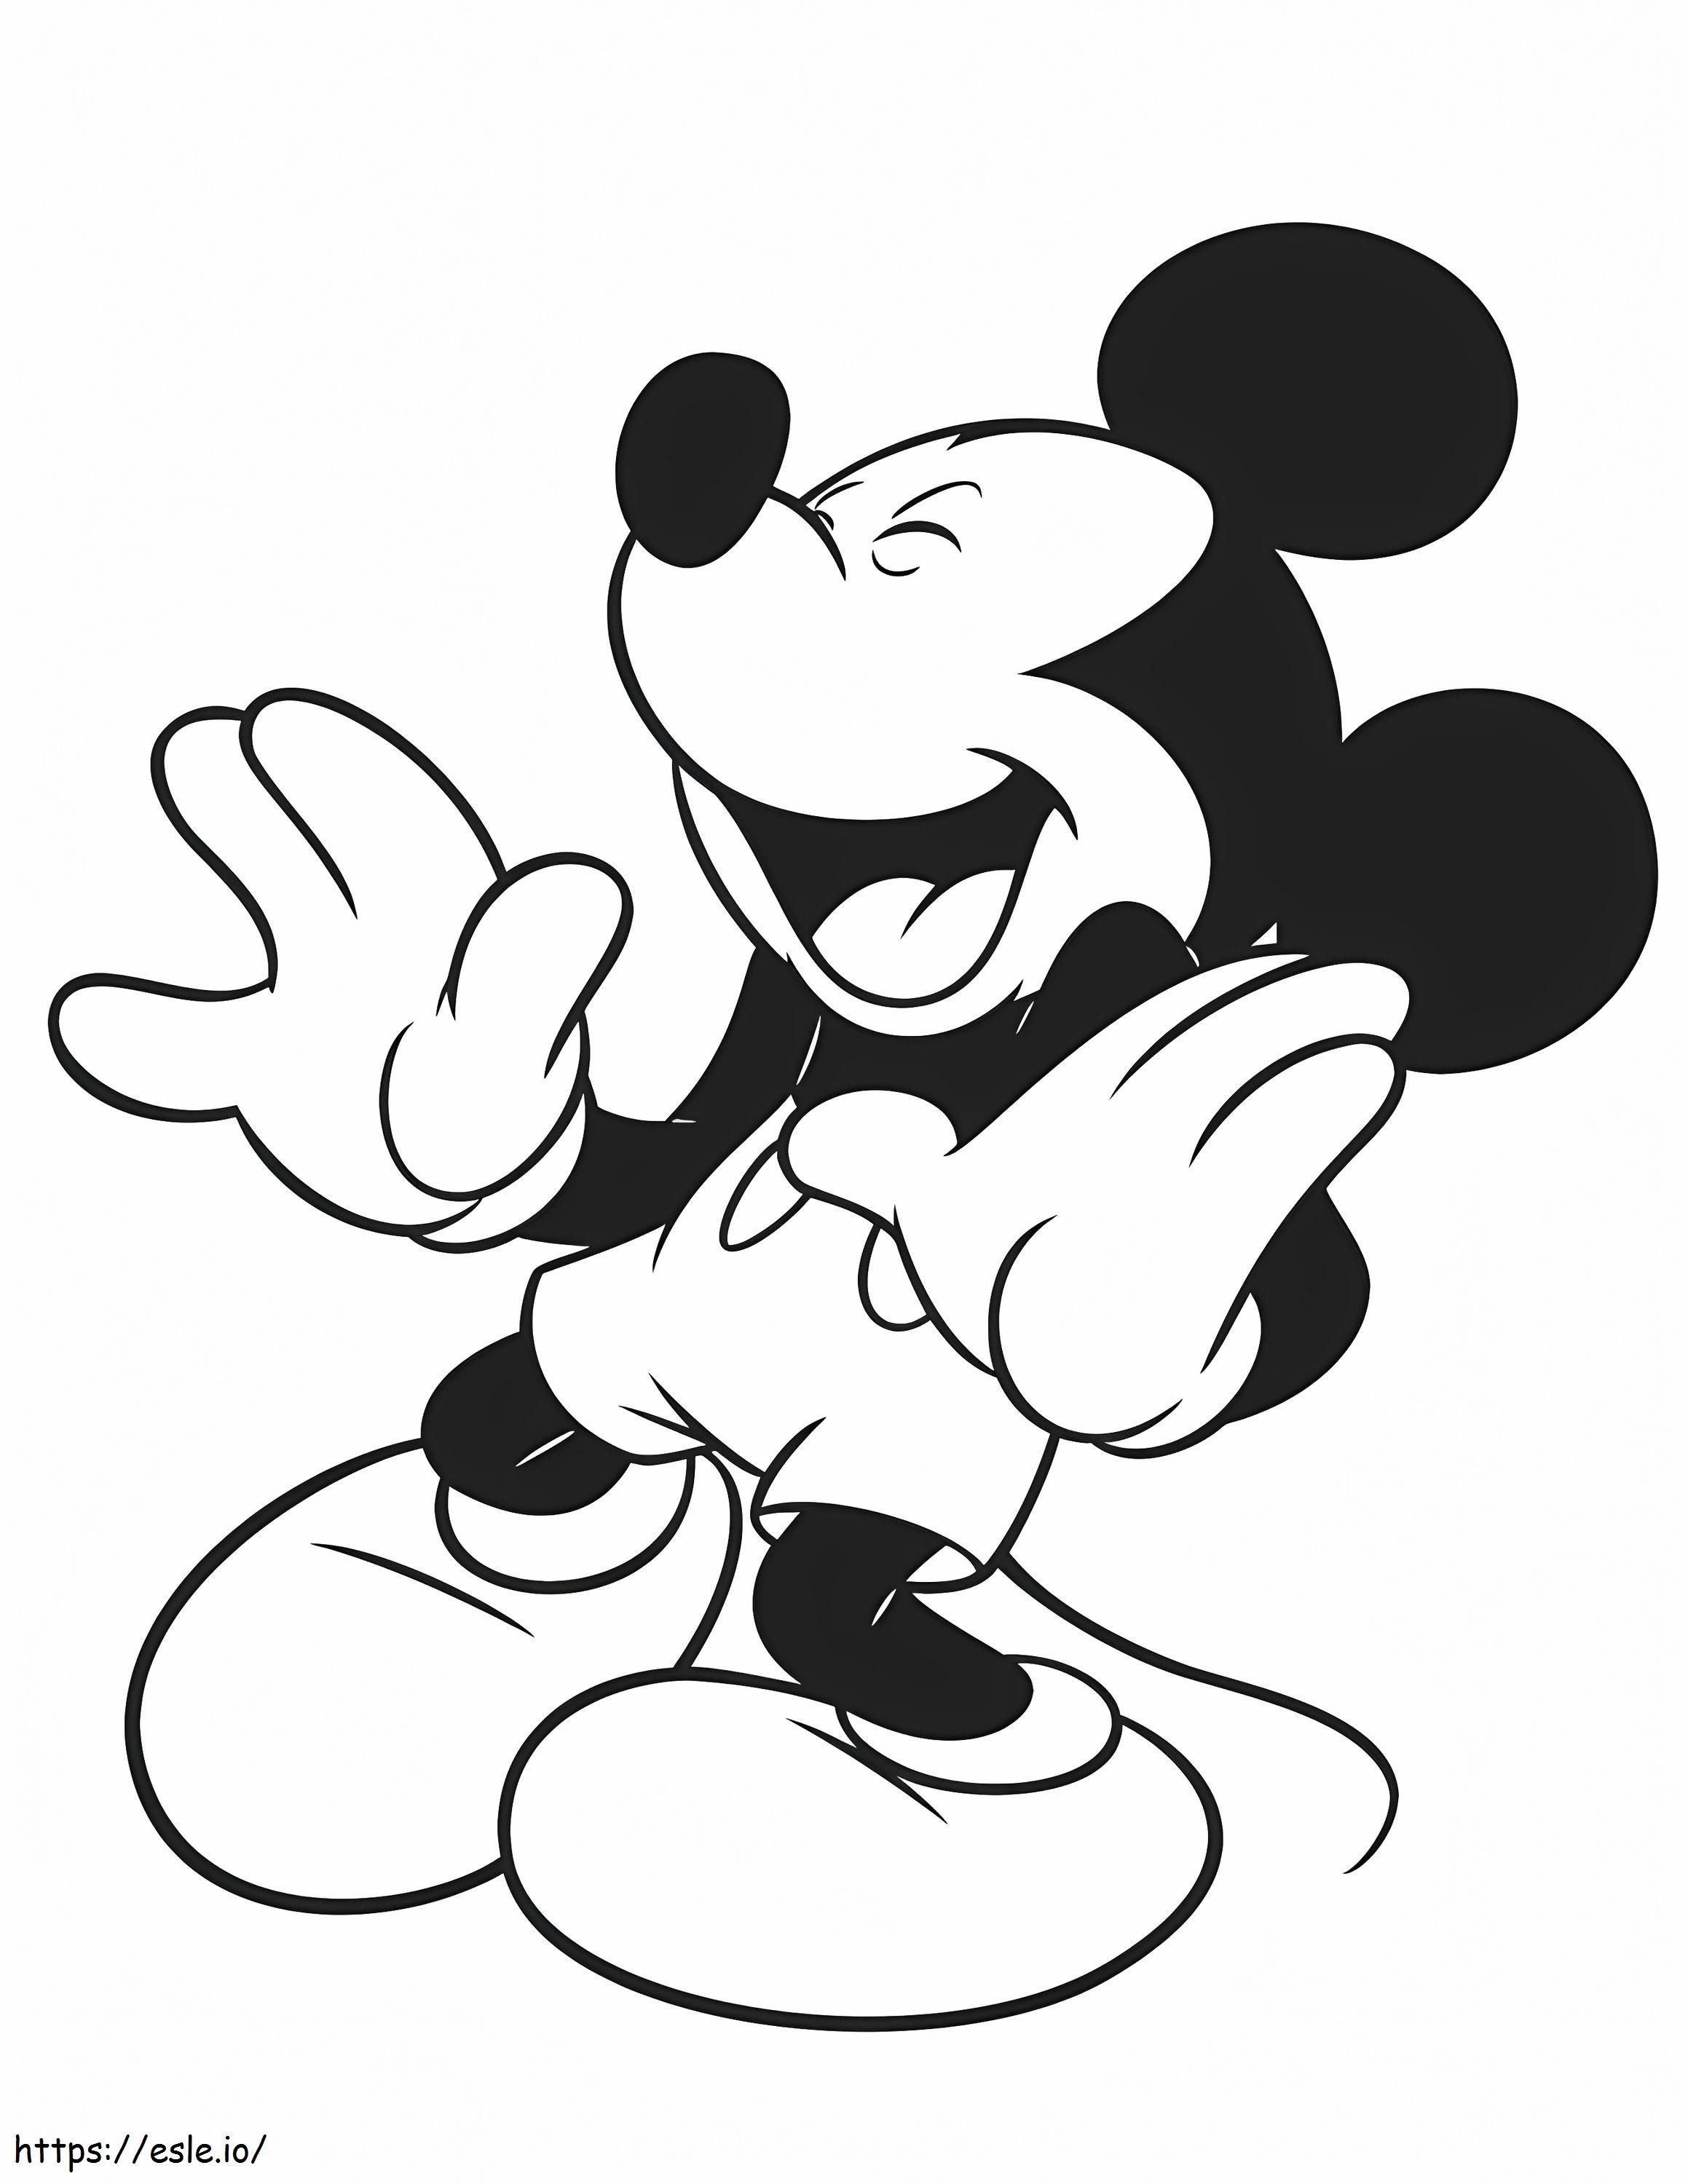  Mickey Mouse 27 9704 kleurplaat kleurplaat